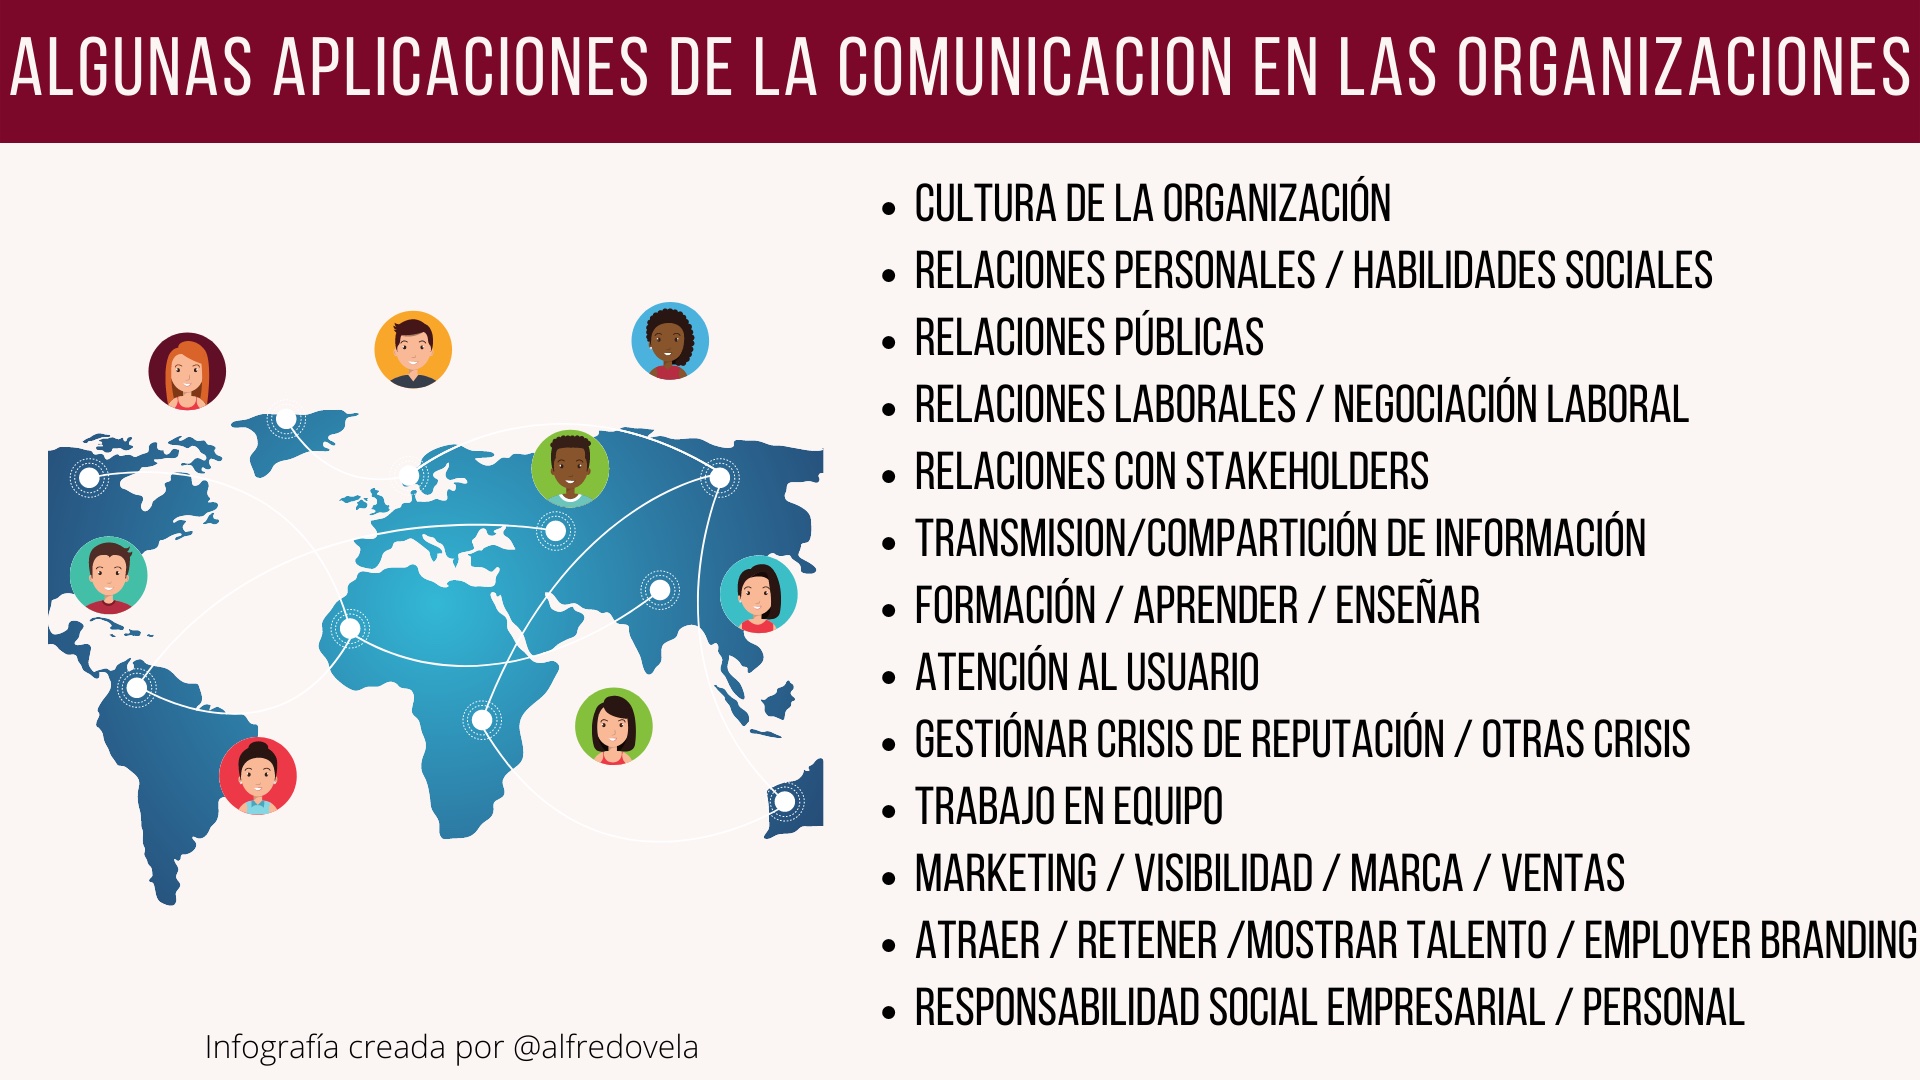 Algunas aplicaciones de la Comunicación en las organizaciones #infografia #rrhh #comunicación